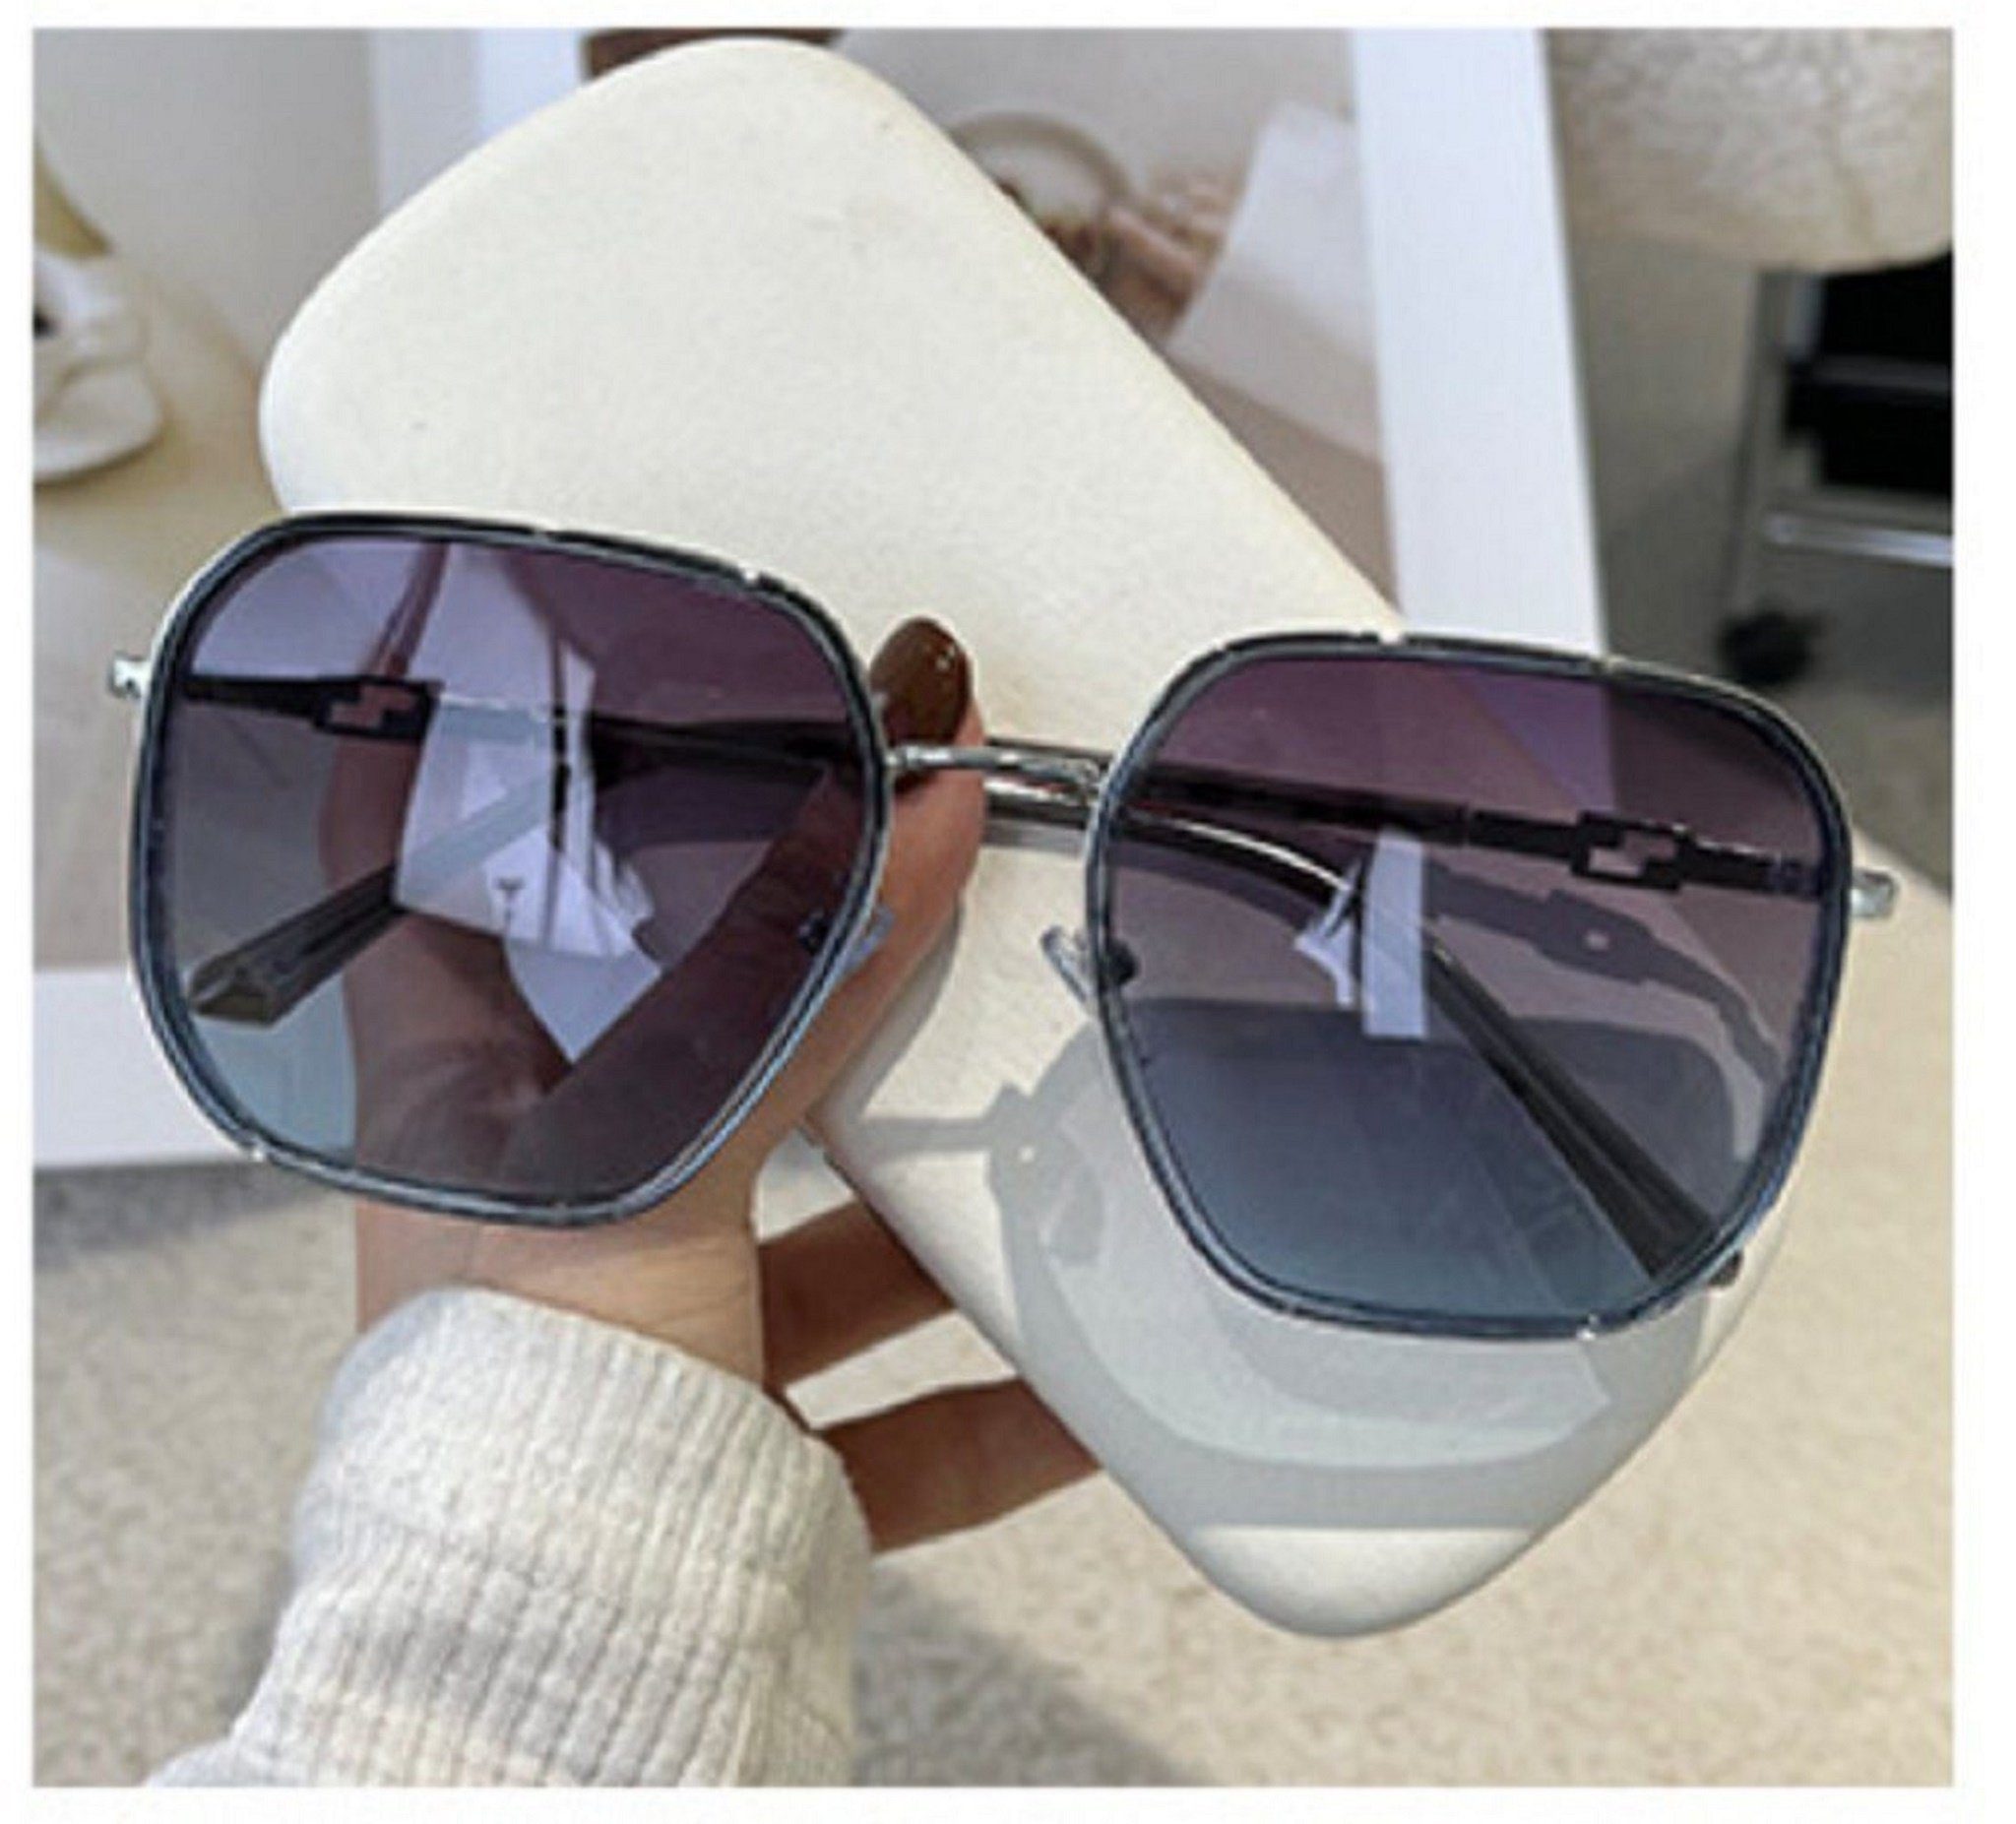 Mutoy Sonnenbrille Sonnenbrille,Sonnenbrille Damen,sonnenbrille damen polarisiert (Frauen Fashion Sonnenbrille , vintage sonnenbrille damen, mit UV400 Schutz) grauBlau